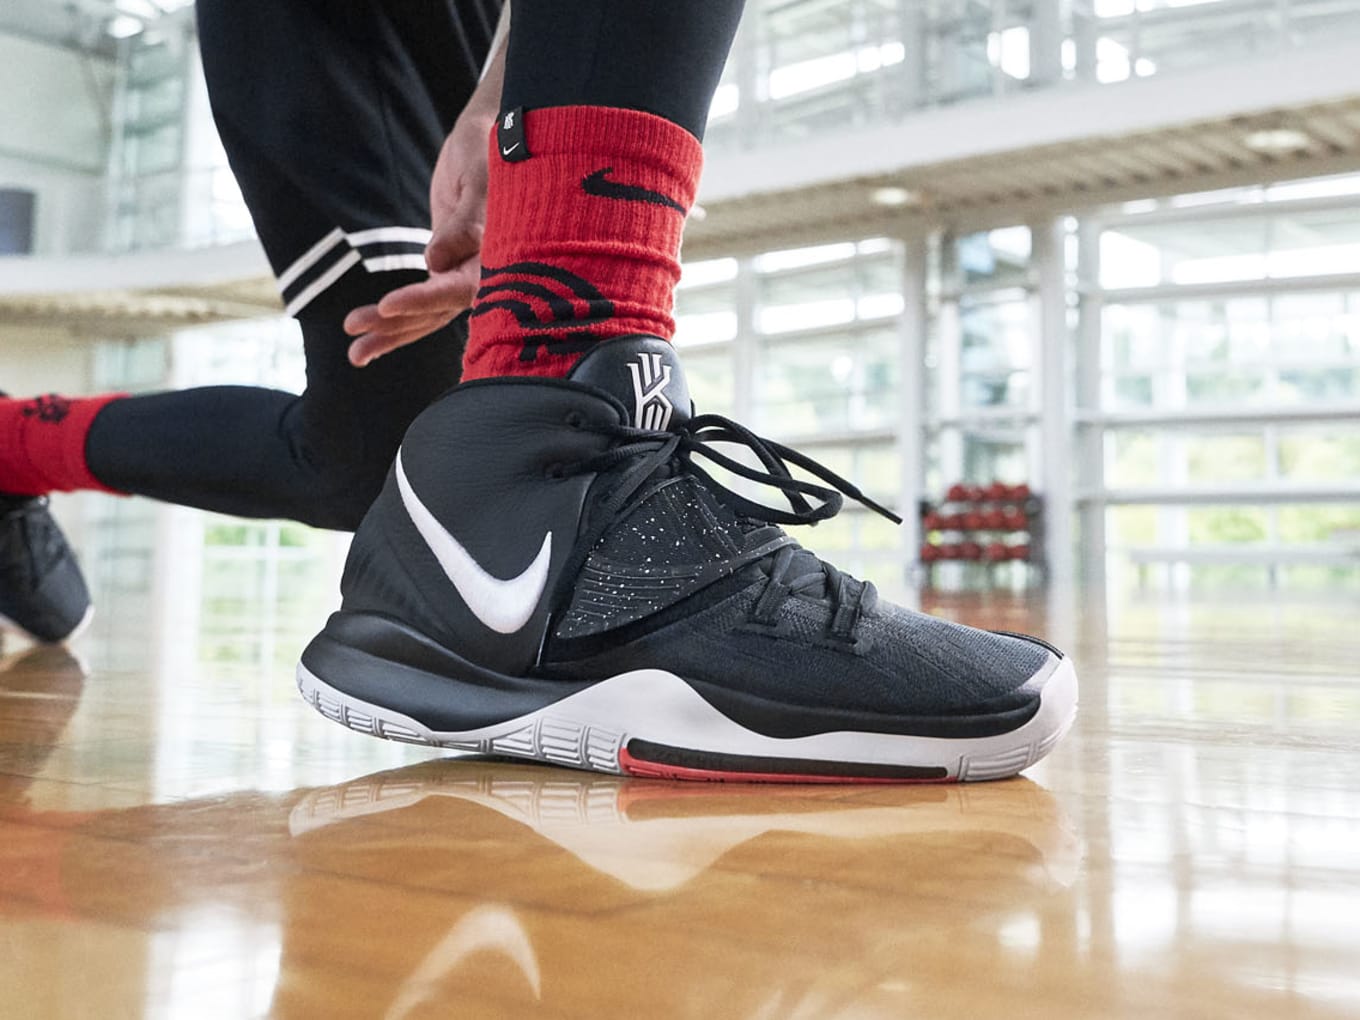 Nike Kyrie 6 x Concepts entenda a inspiração por trás da